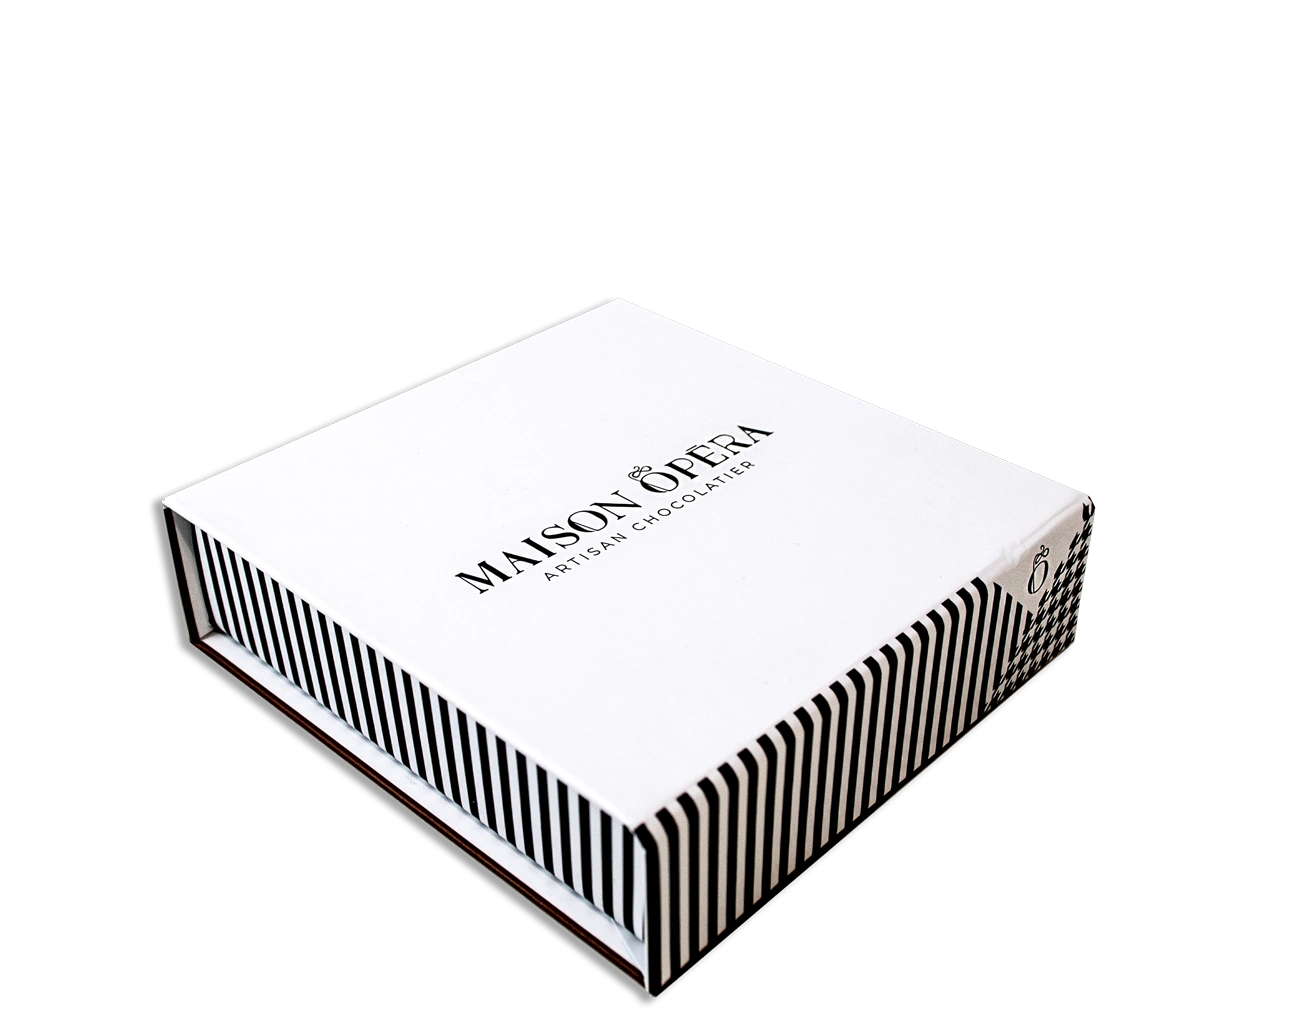 Remarquable Box Aimant Personnalisée en Impression 1 couleur 100% et finition avec pelliculage Mat. Ce packaging sur-mesure est bien sûr éco-responsable.